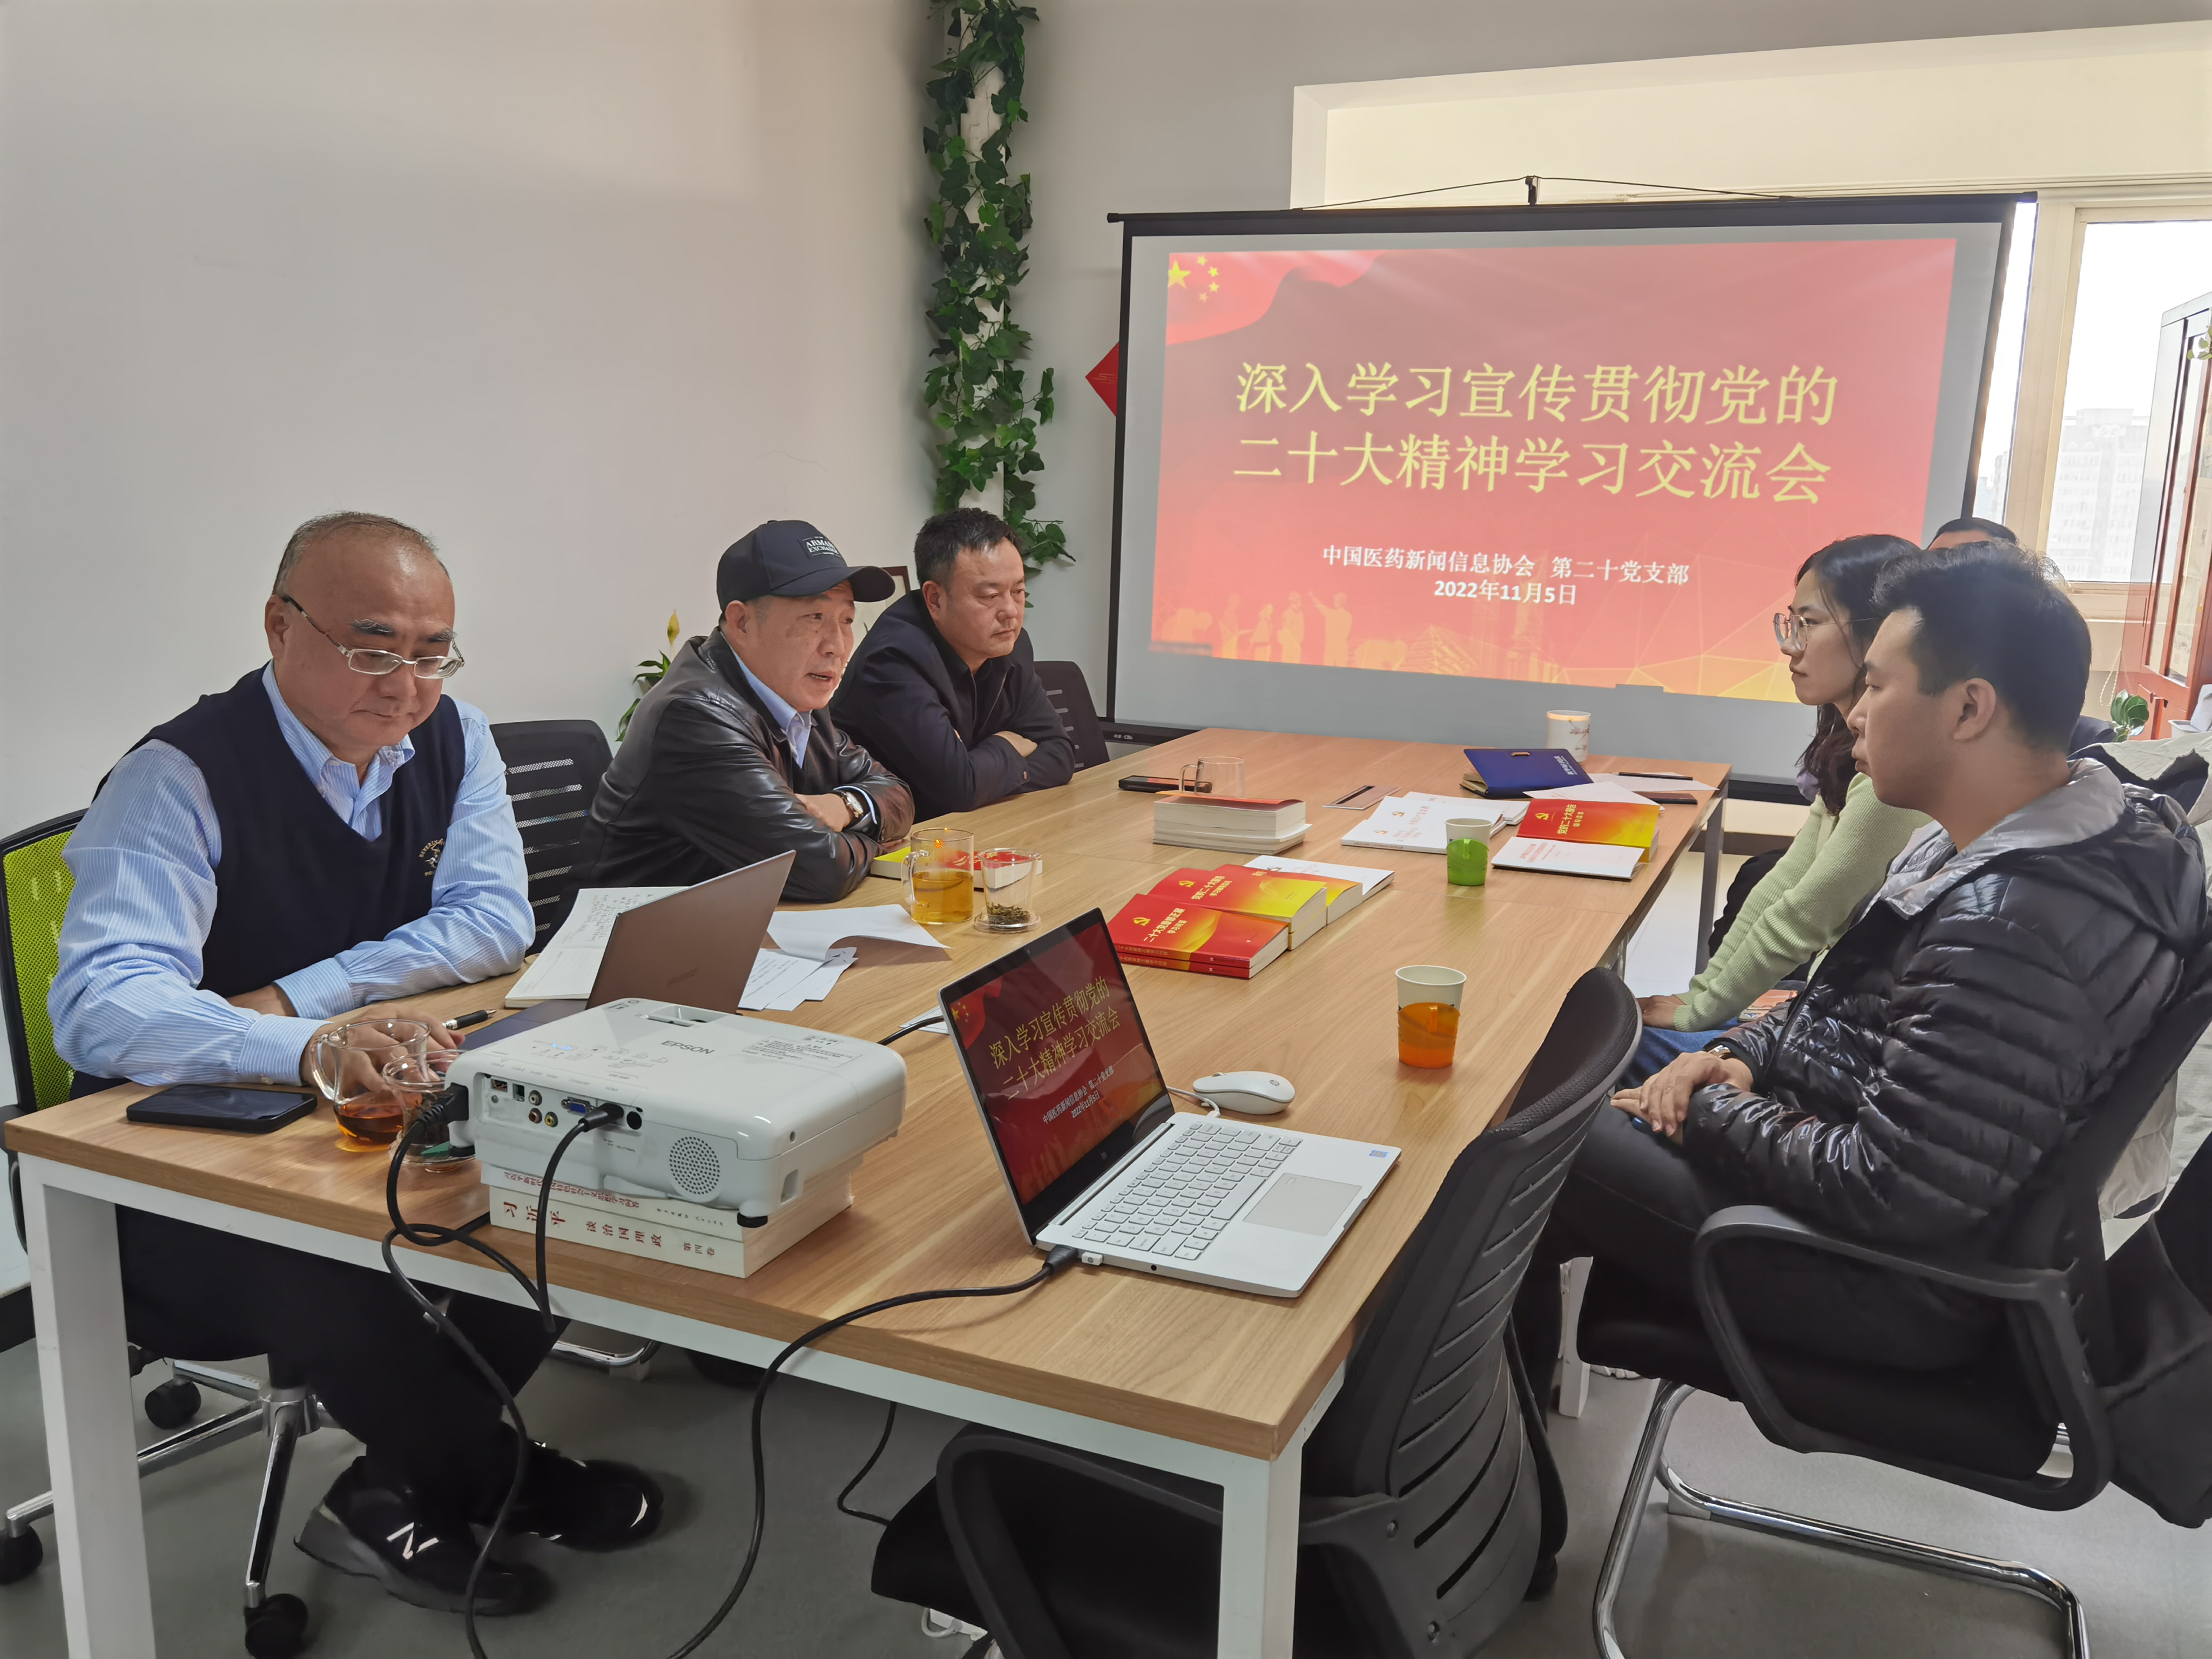 中国医药新闻信息协会 召开深入学习宣传贯彻党的二十大精神交流会